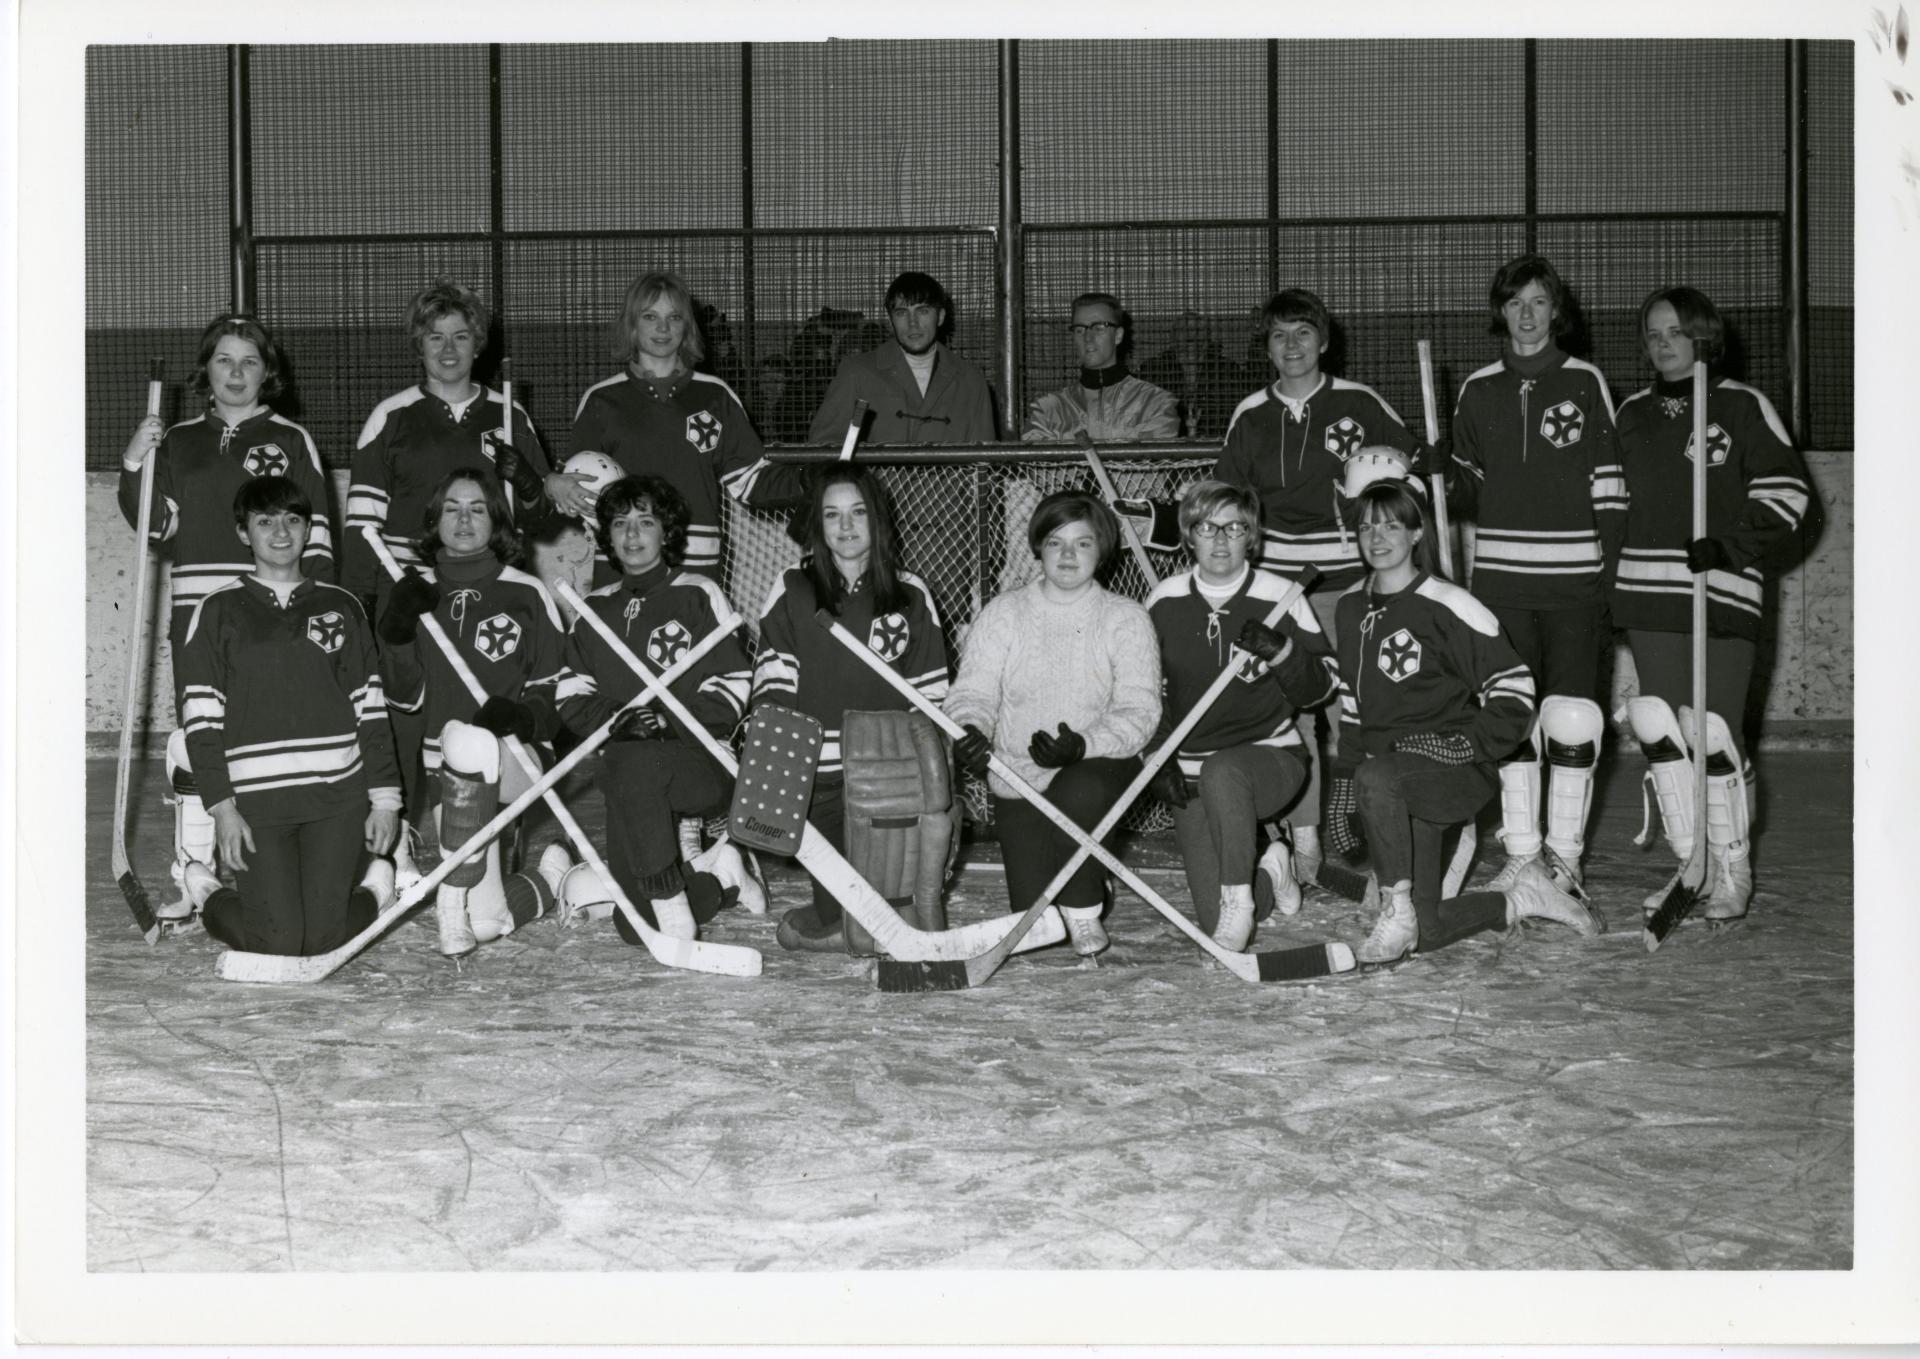 Heather Bensen on a hockey team in a team photo.